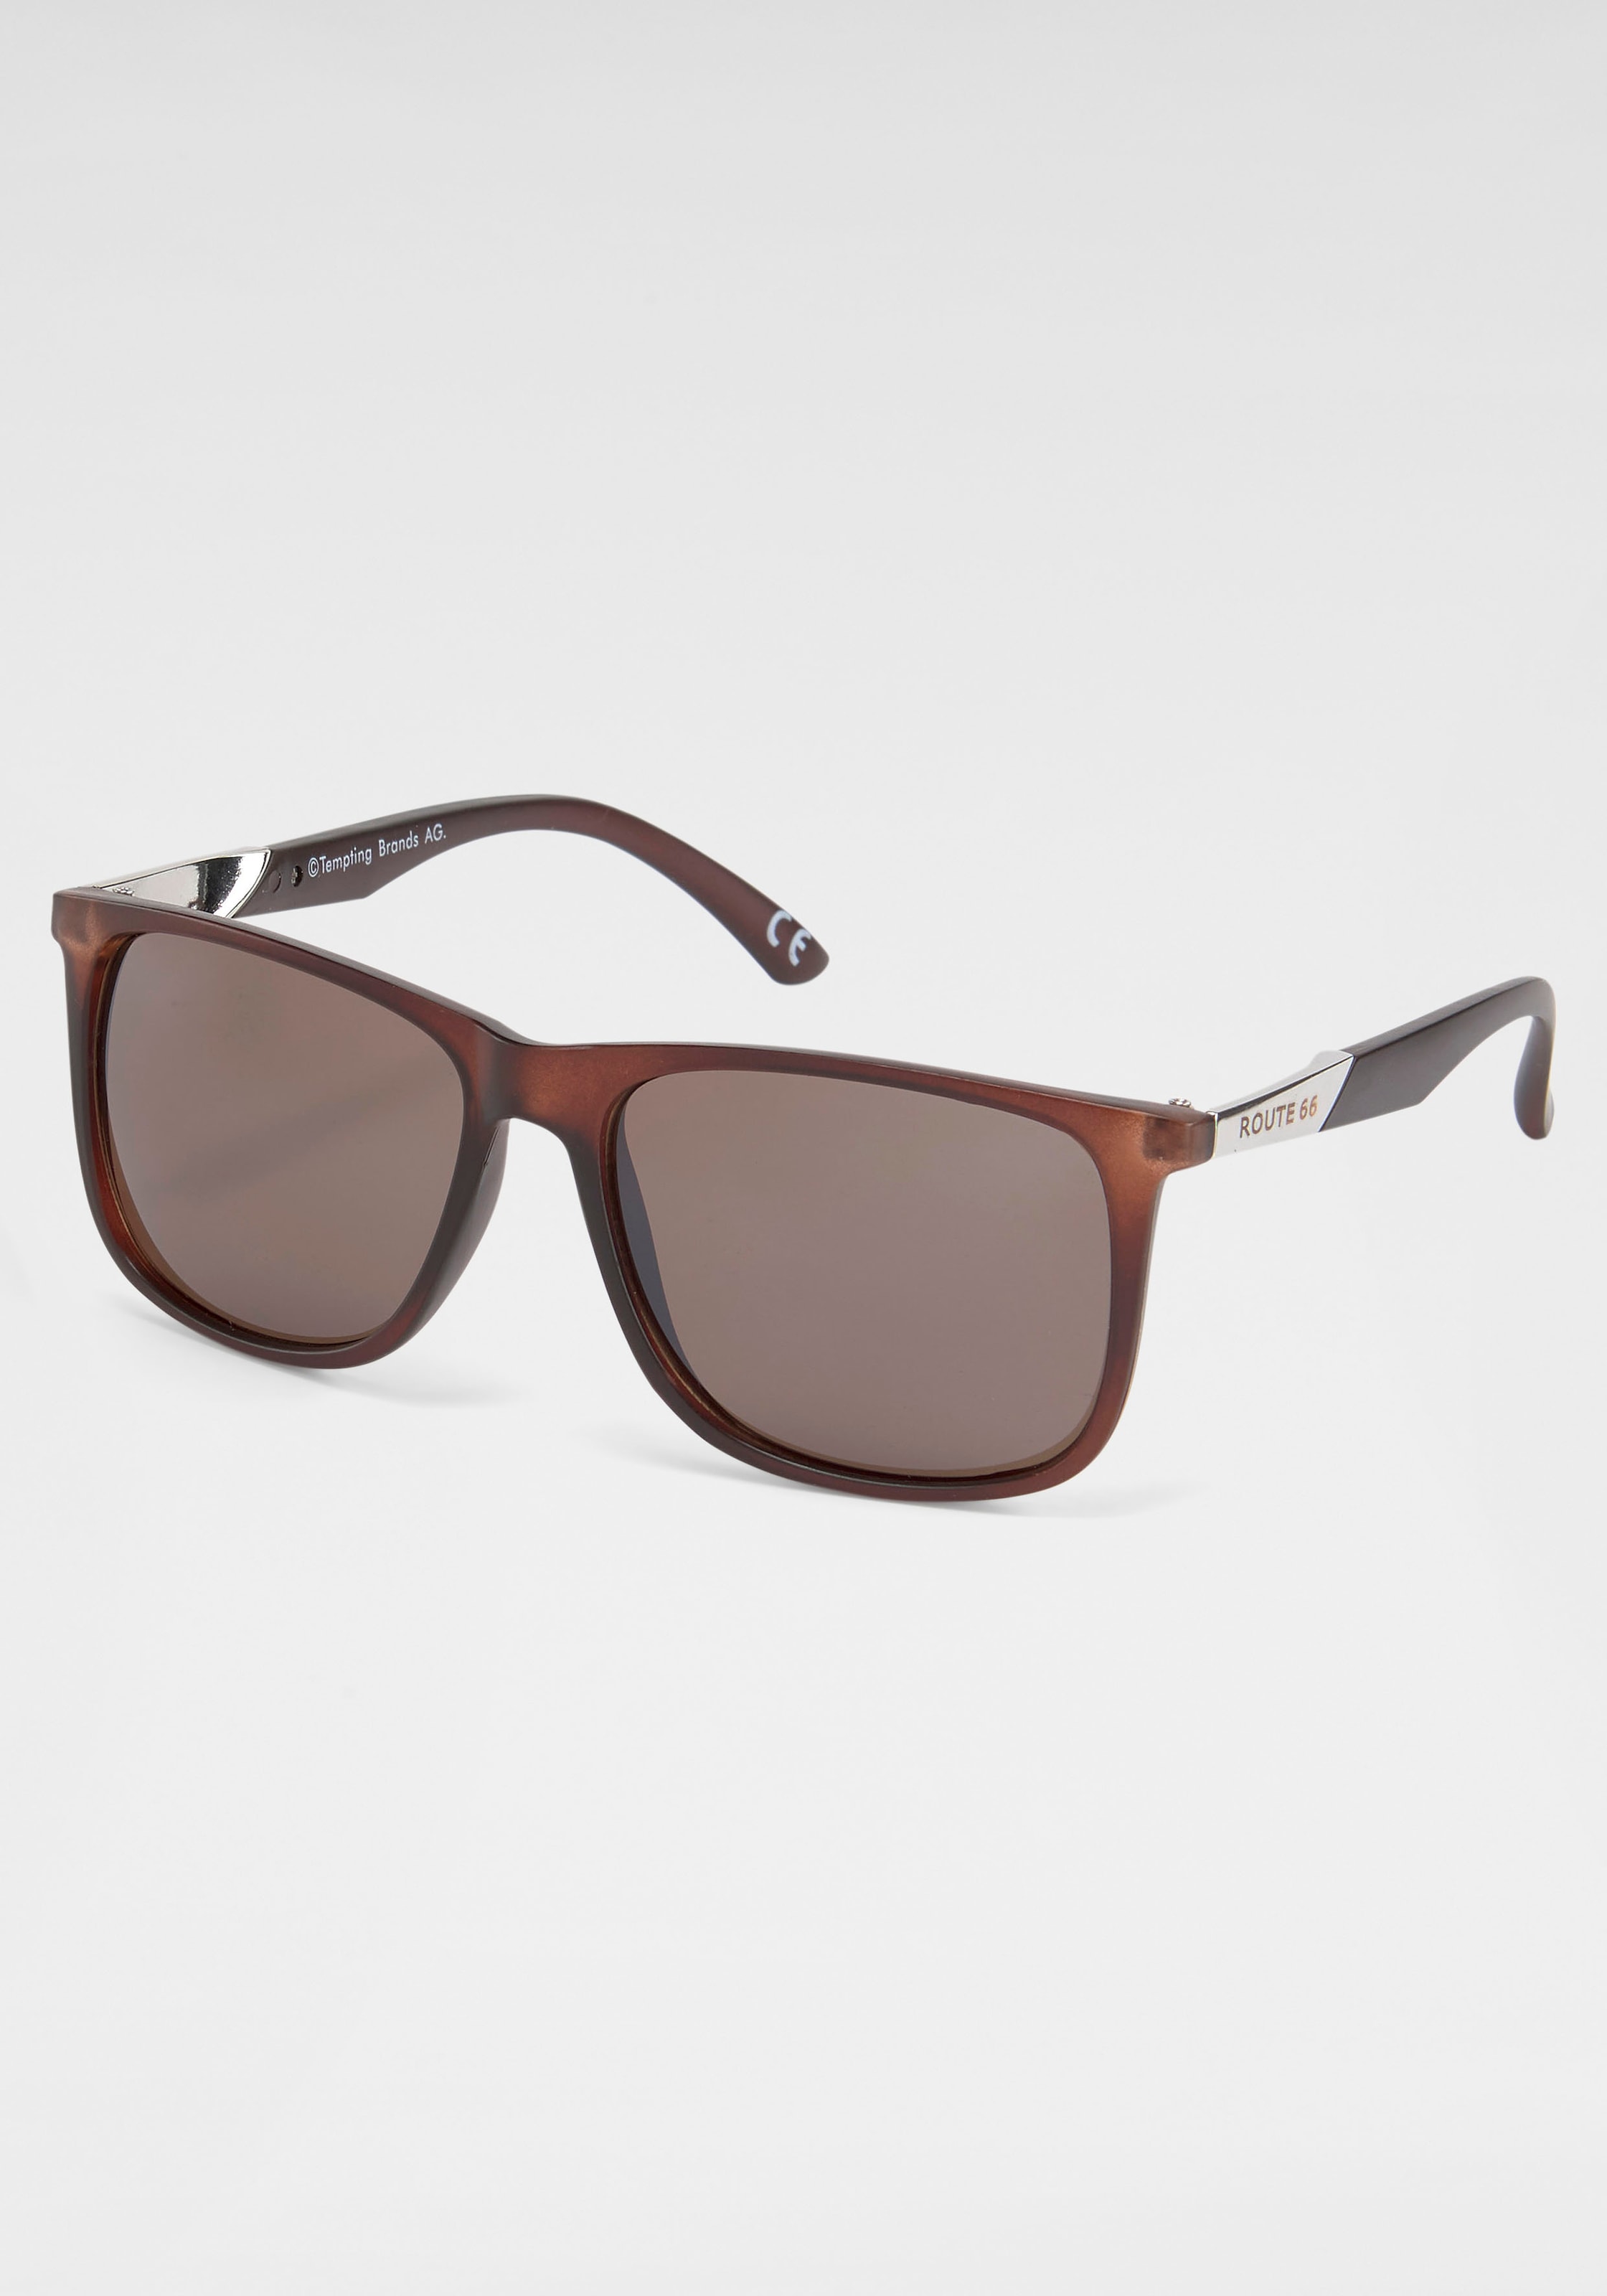 catwalk Eyewear Sonnenbrille bei OTTO shoppen online